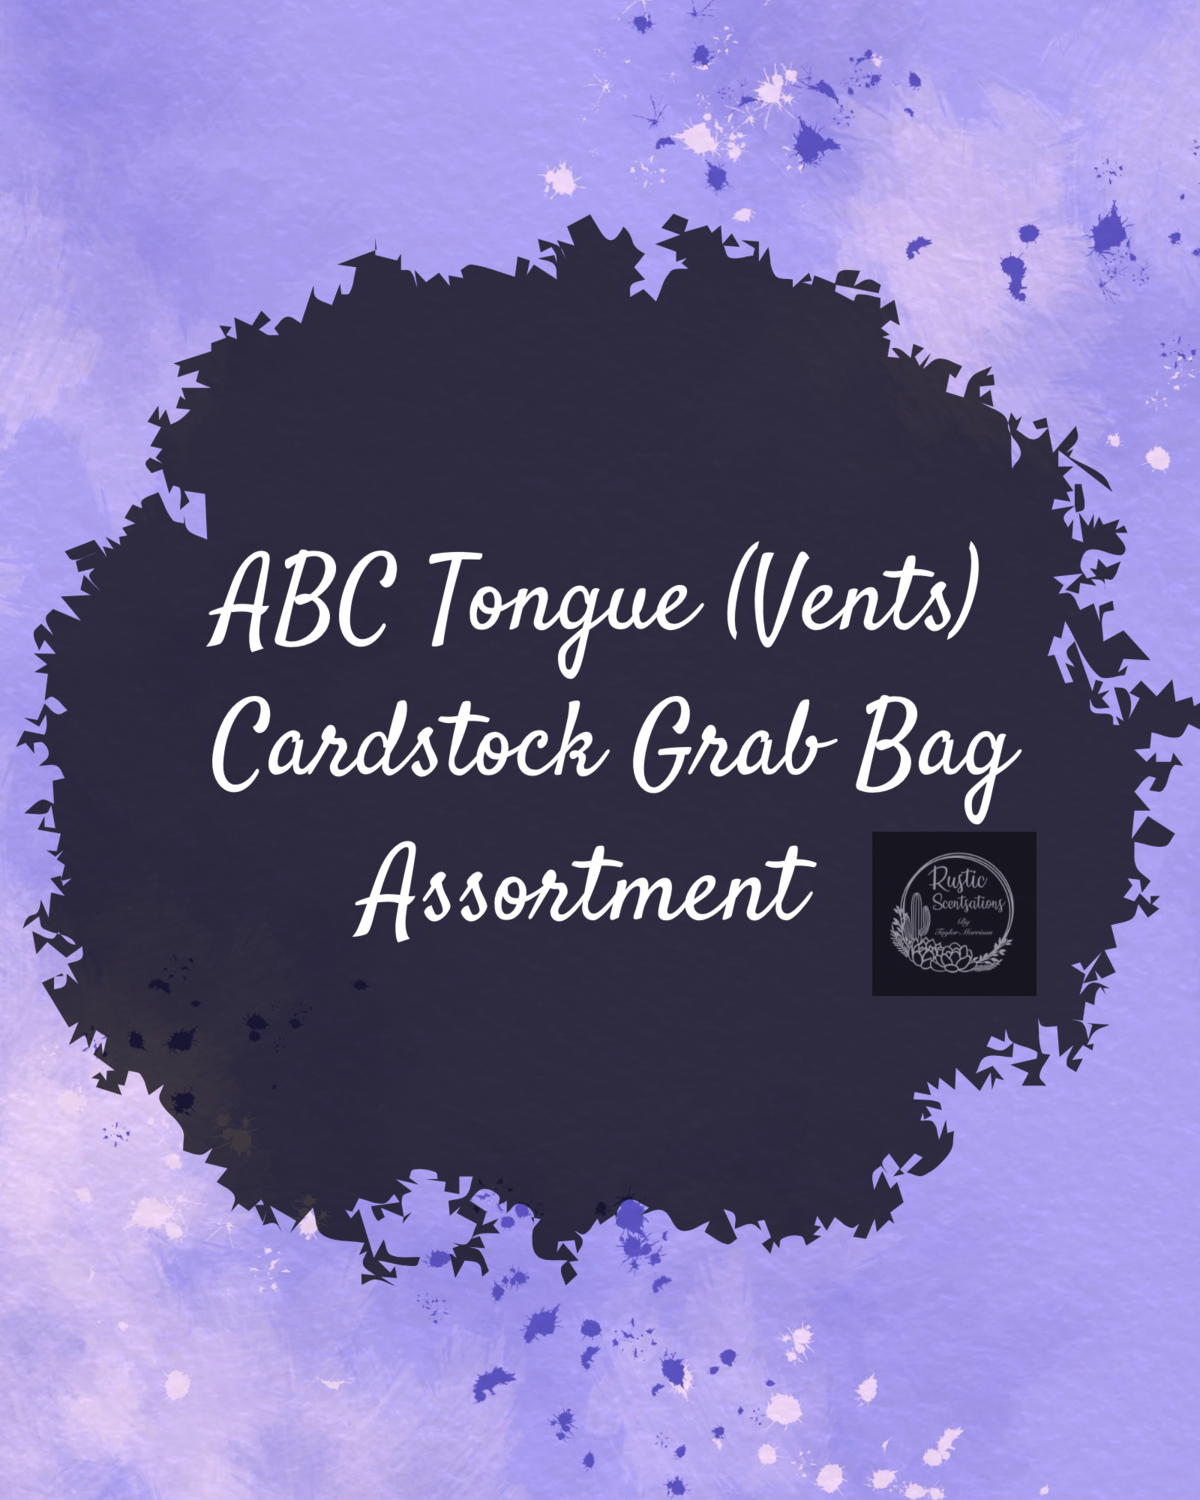 ABC Tongue Vents Cardstock Grab Bag